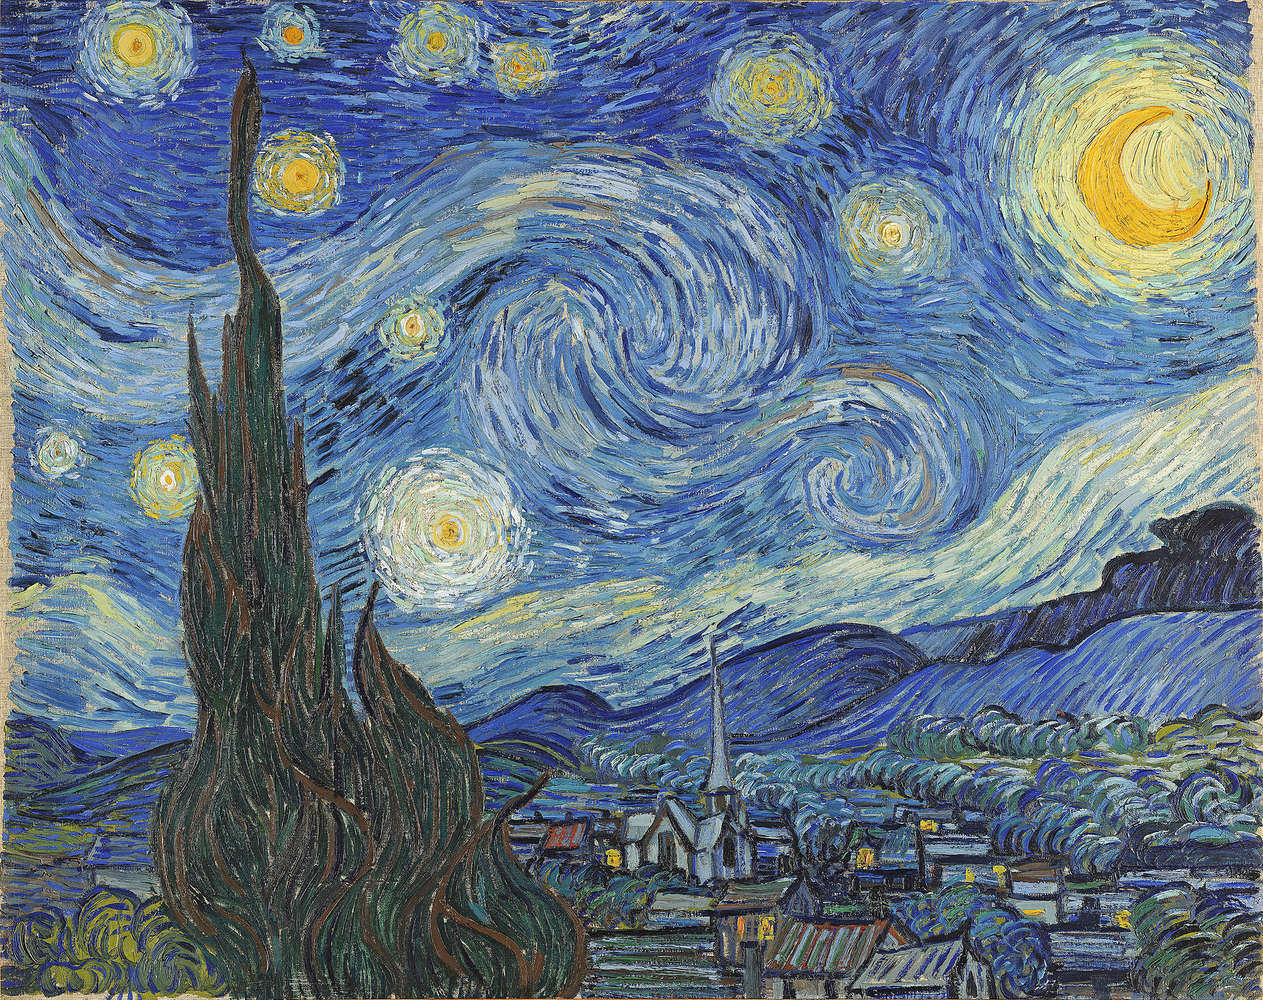             Il murale "La notte stellata" di Vincent van Gogh
        